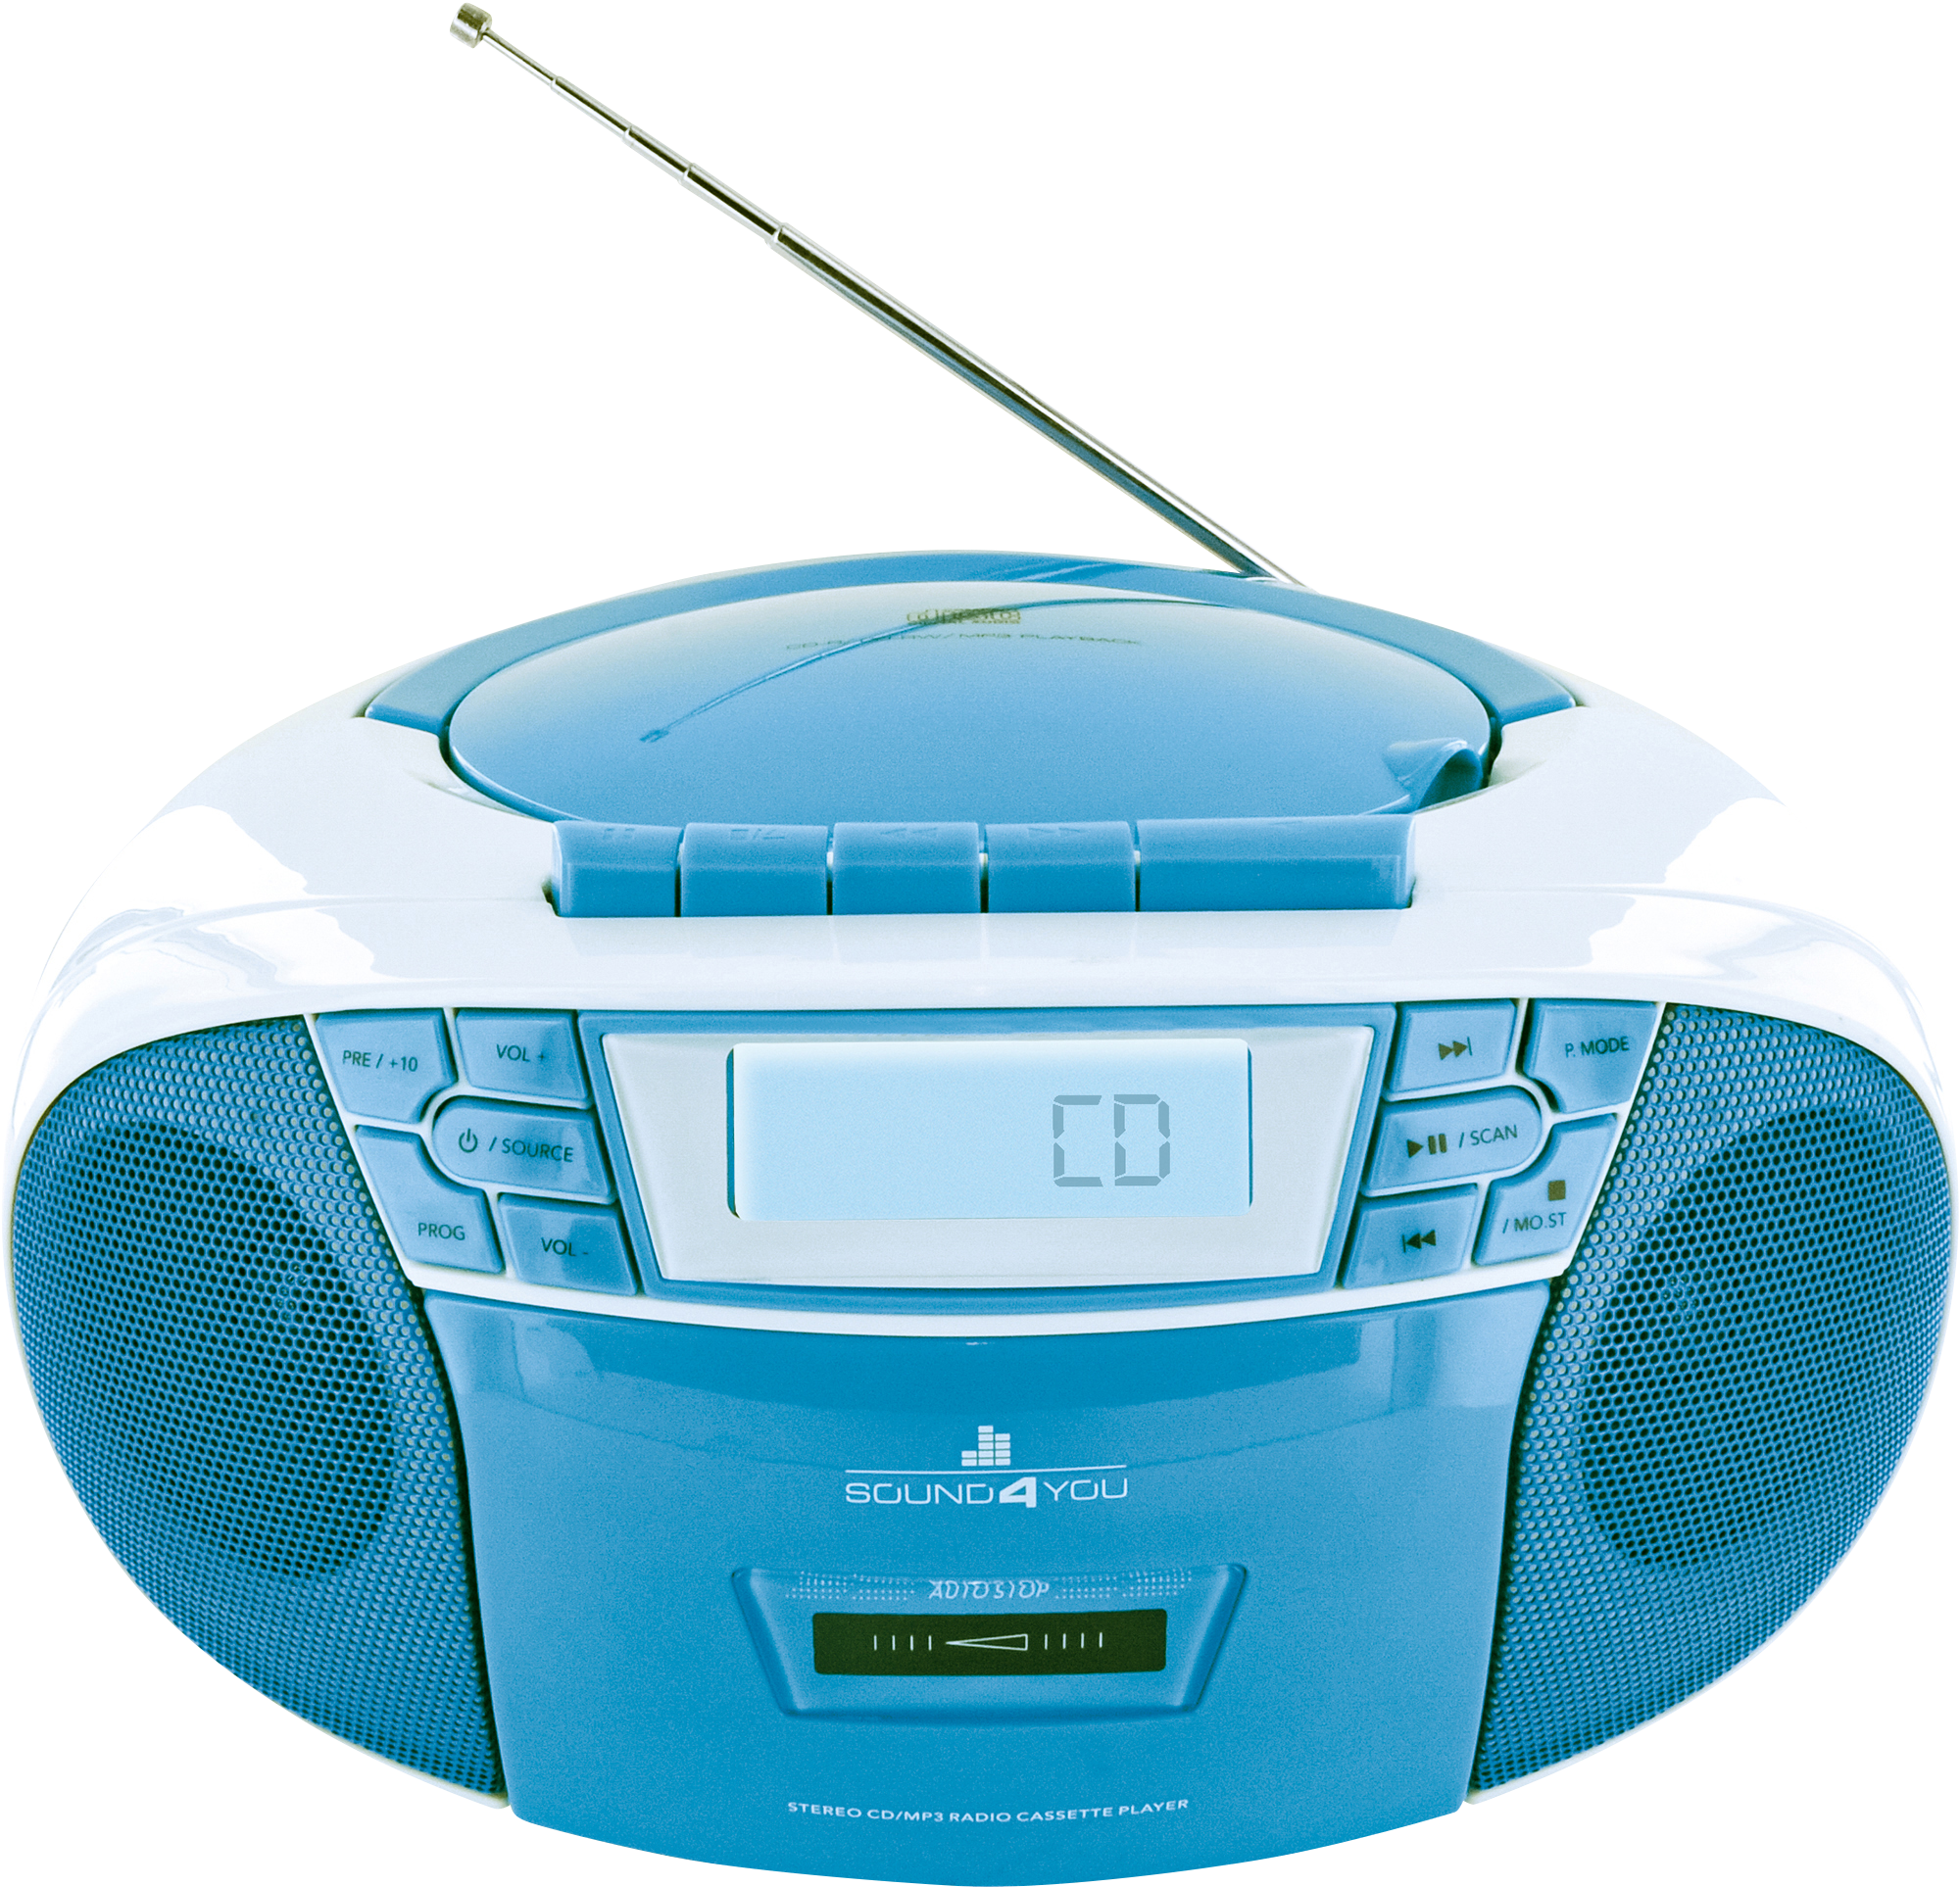 SCHWAIGER -661651- Tragbarer CD-Player Blau/Weiß mit und Radio, Kassettendeck FM